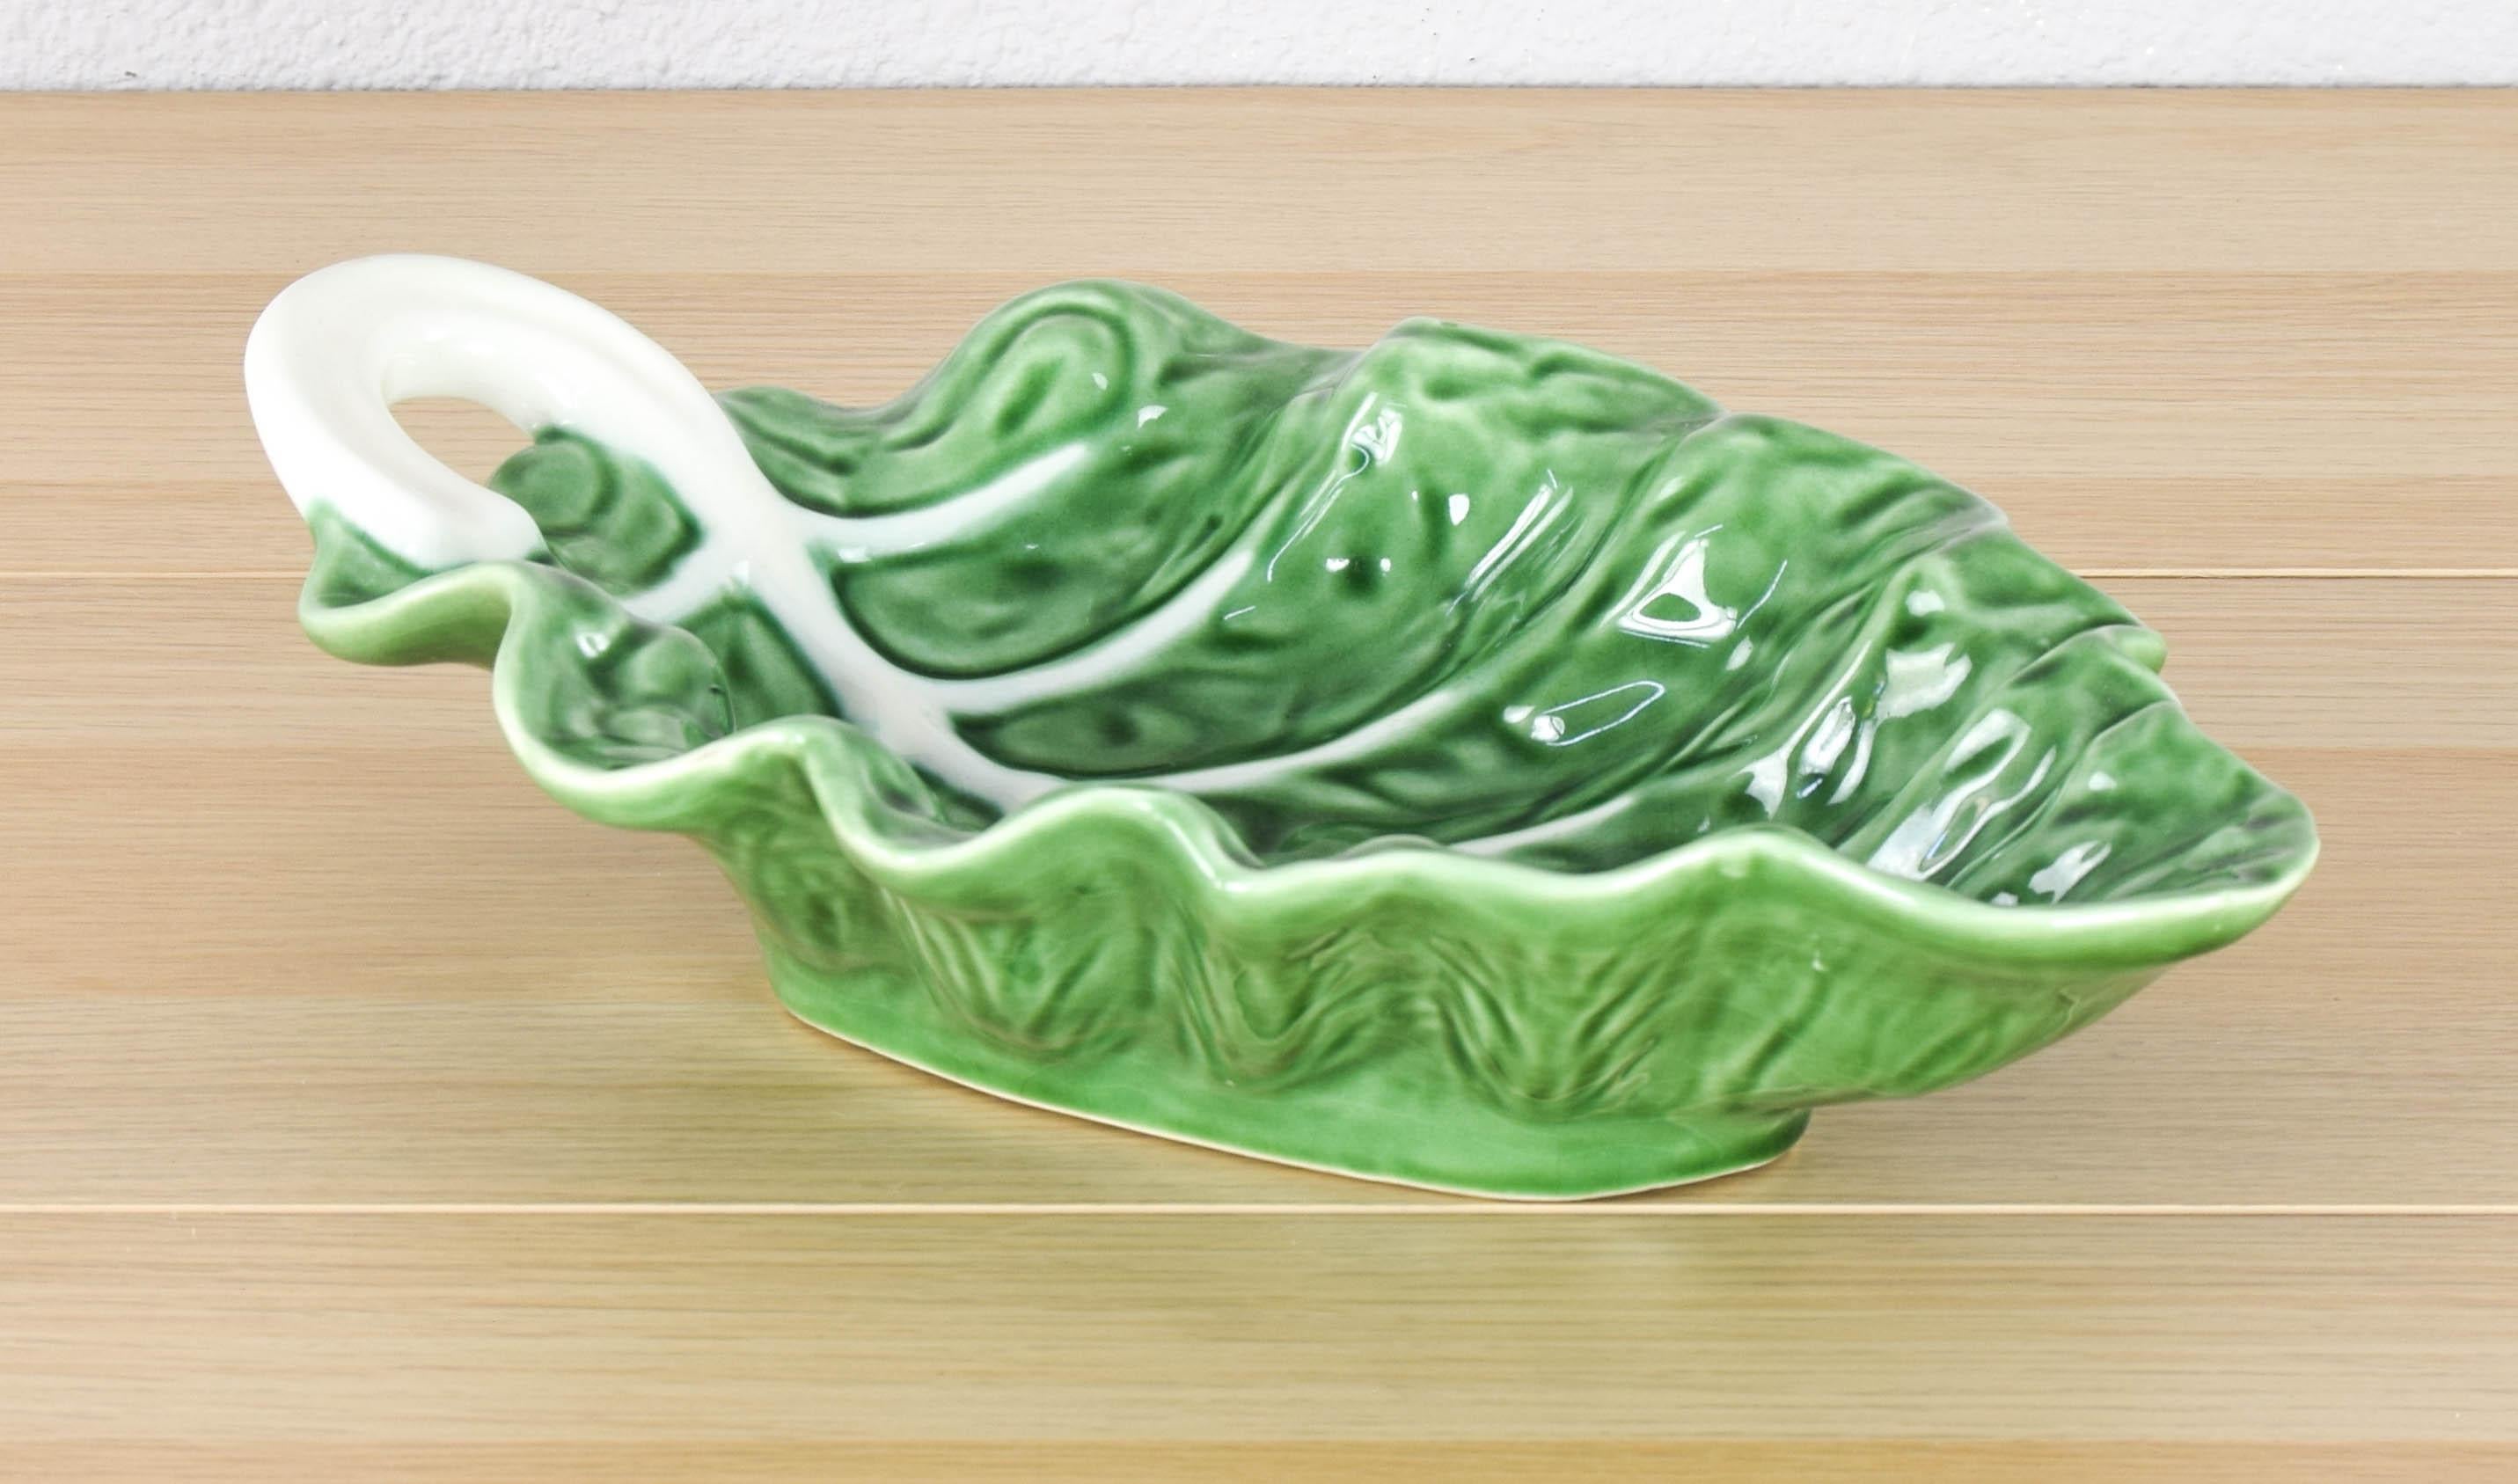 Schöne und einzigartige emaillierte Keramik Salatschüssel handgefertigt in der Form eines Kohlblattes von Bordallo Pinheiro.
Die Salatschüssel ist in einem ausgezeichneten Zustand und hat keine Mängel.

Diese aus der High Society der 60er Jahre